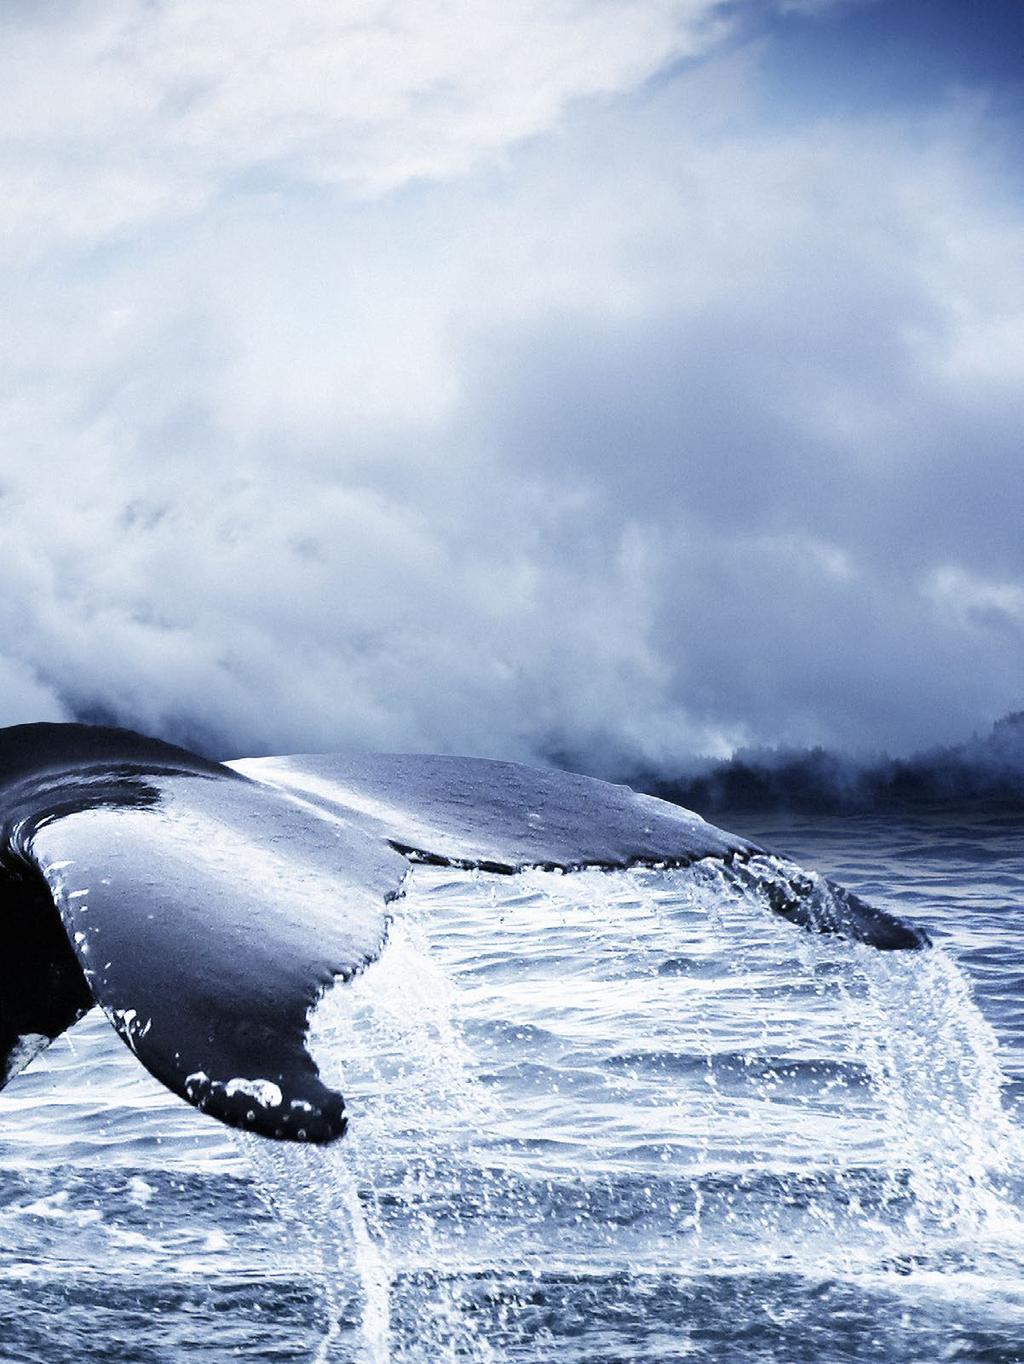 Studien Betreuer die Wahl Die Wale (Cetacea) sind eine rdnun tiere mit etwa 80